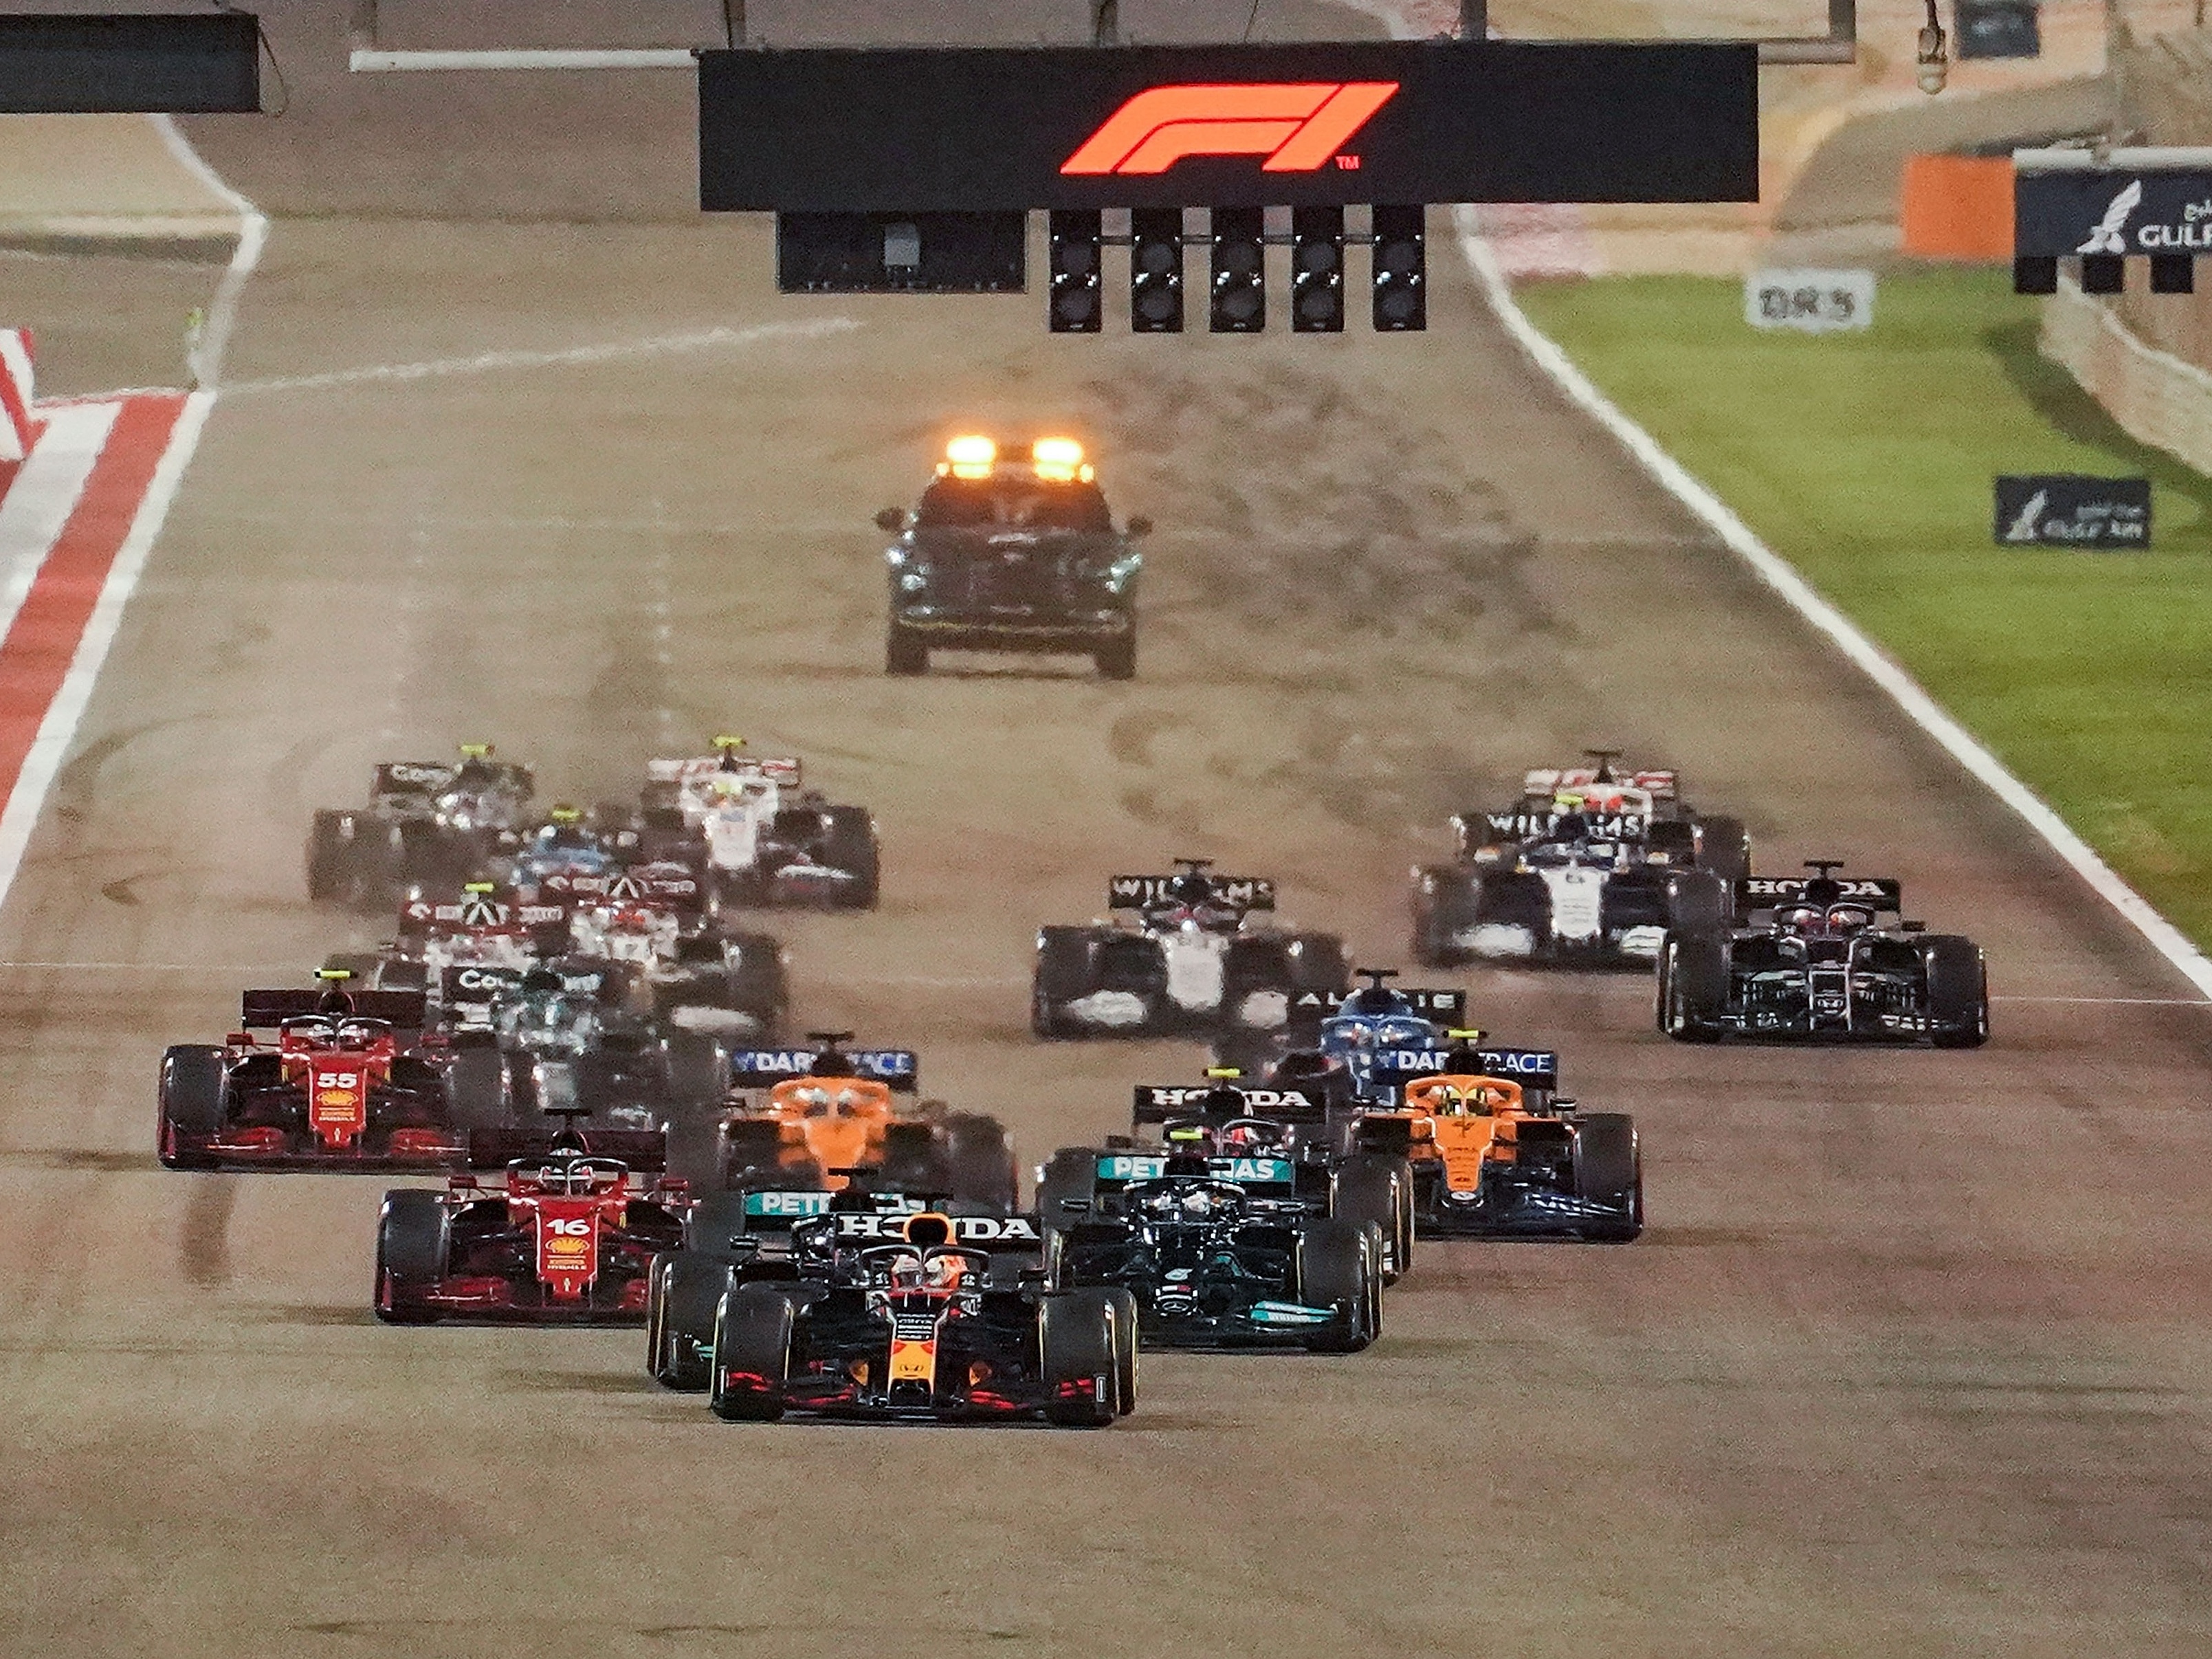 F1 Grande Prémio do Bahrain 2022 : Resumo e Resultados